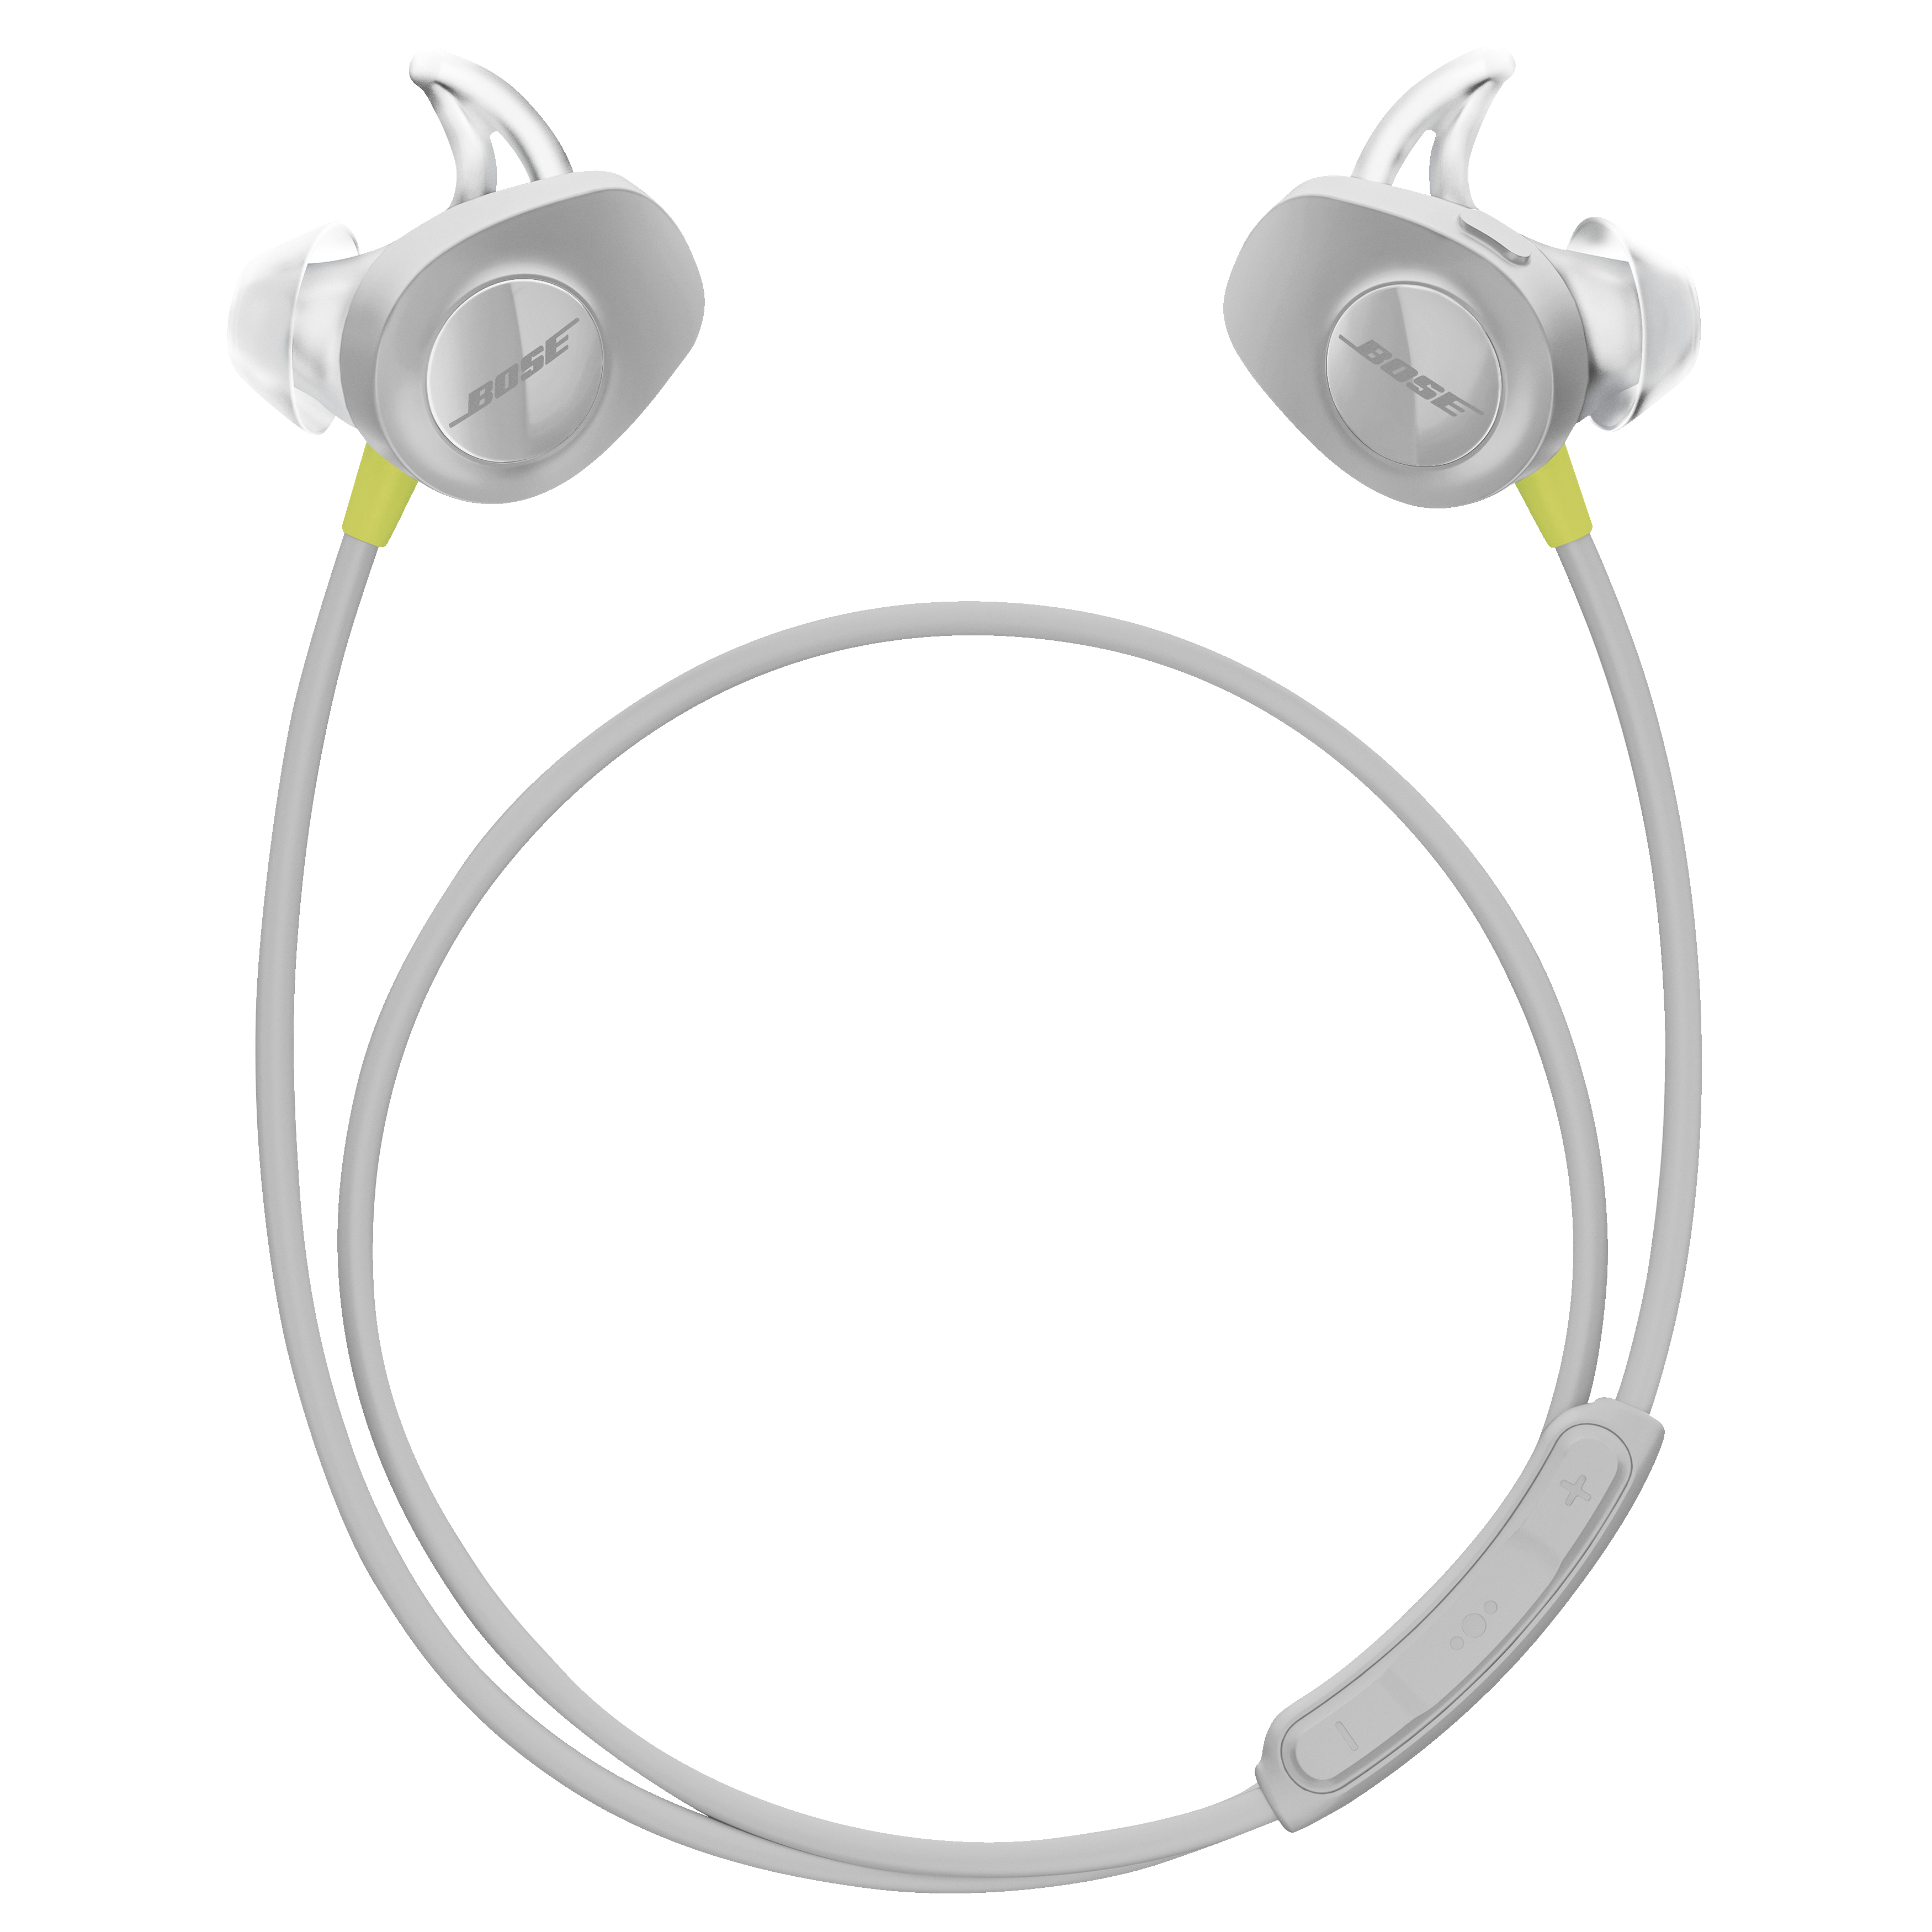 Bose SoundSport trådløse hovedtelefoner - gul - Hovedtelefoner - Elgiganten